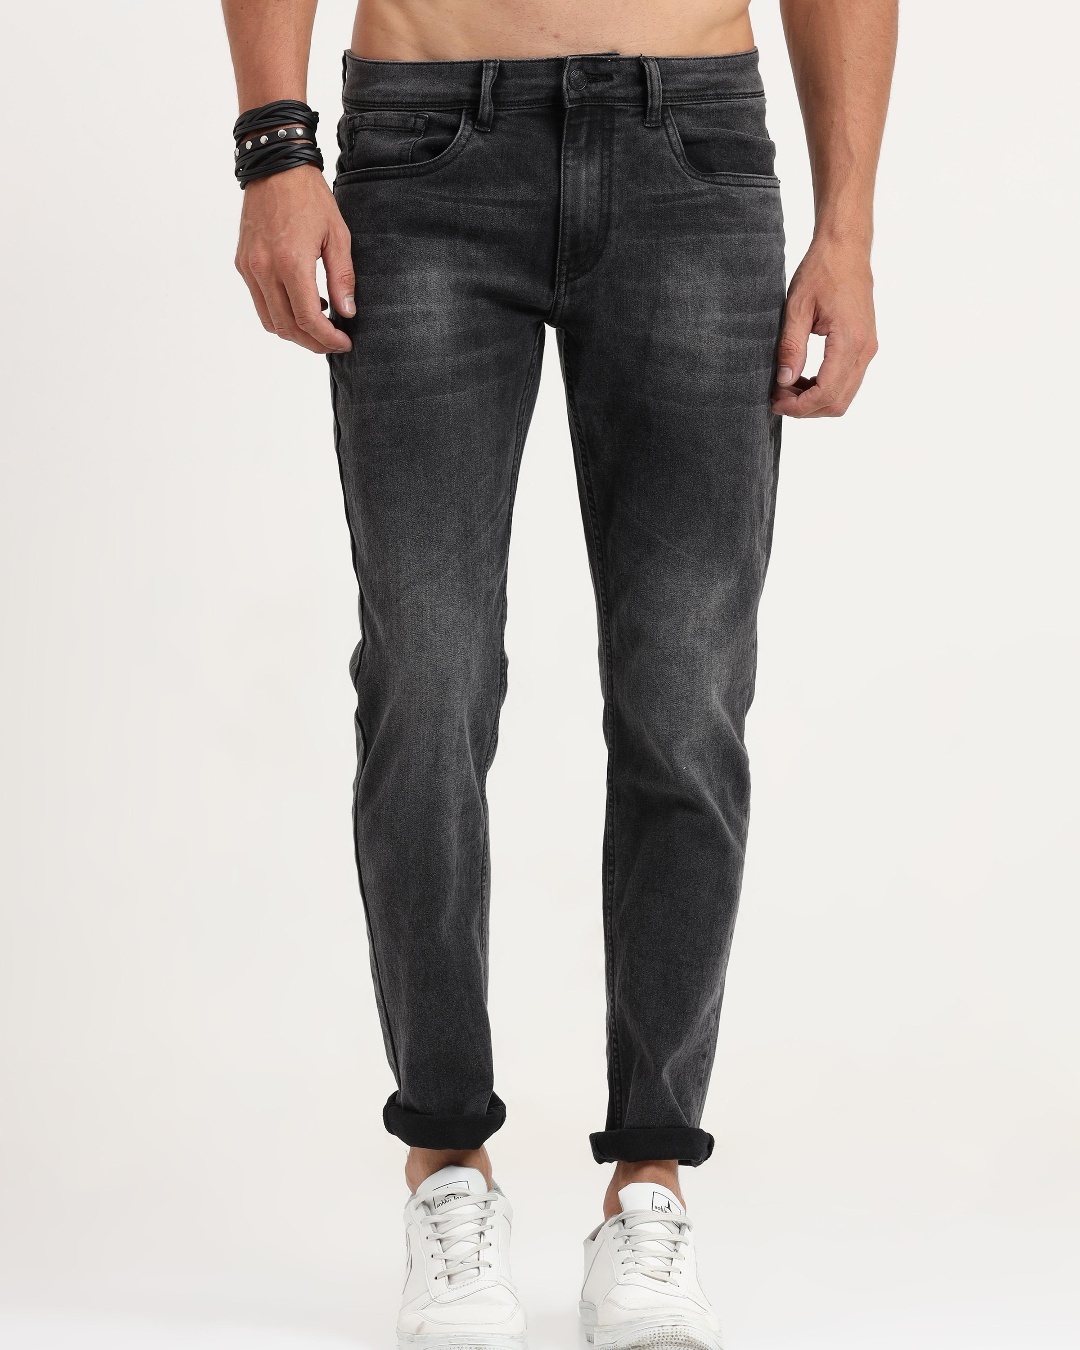 Buy Men's Grey Skinny Fit Jeans Online at Bewakoof